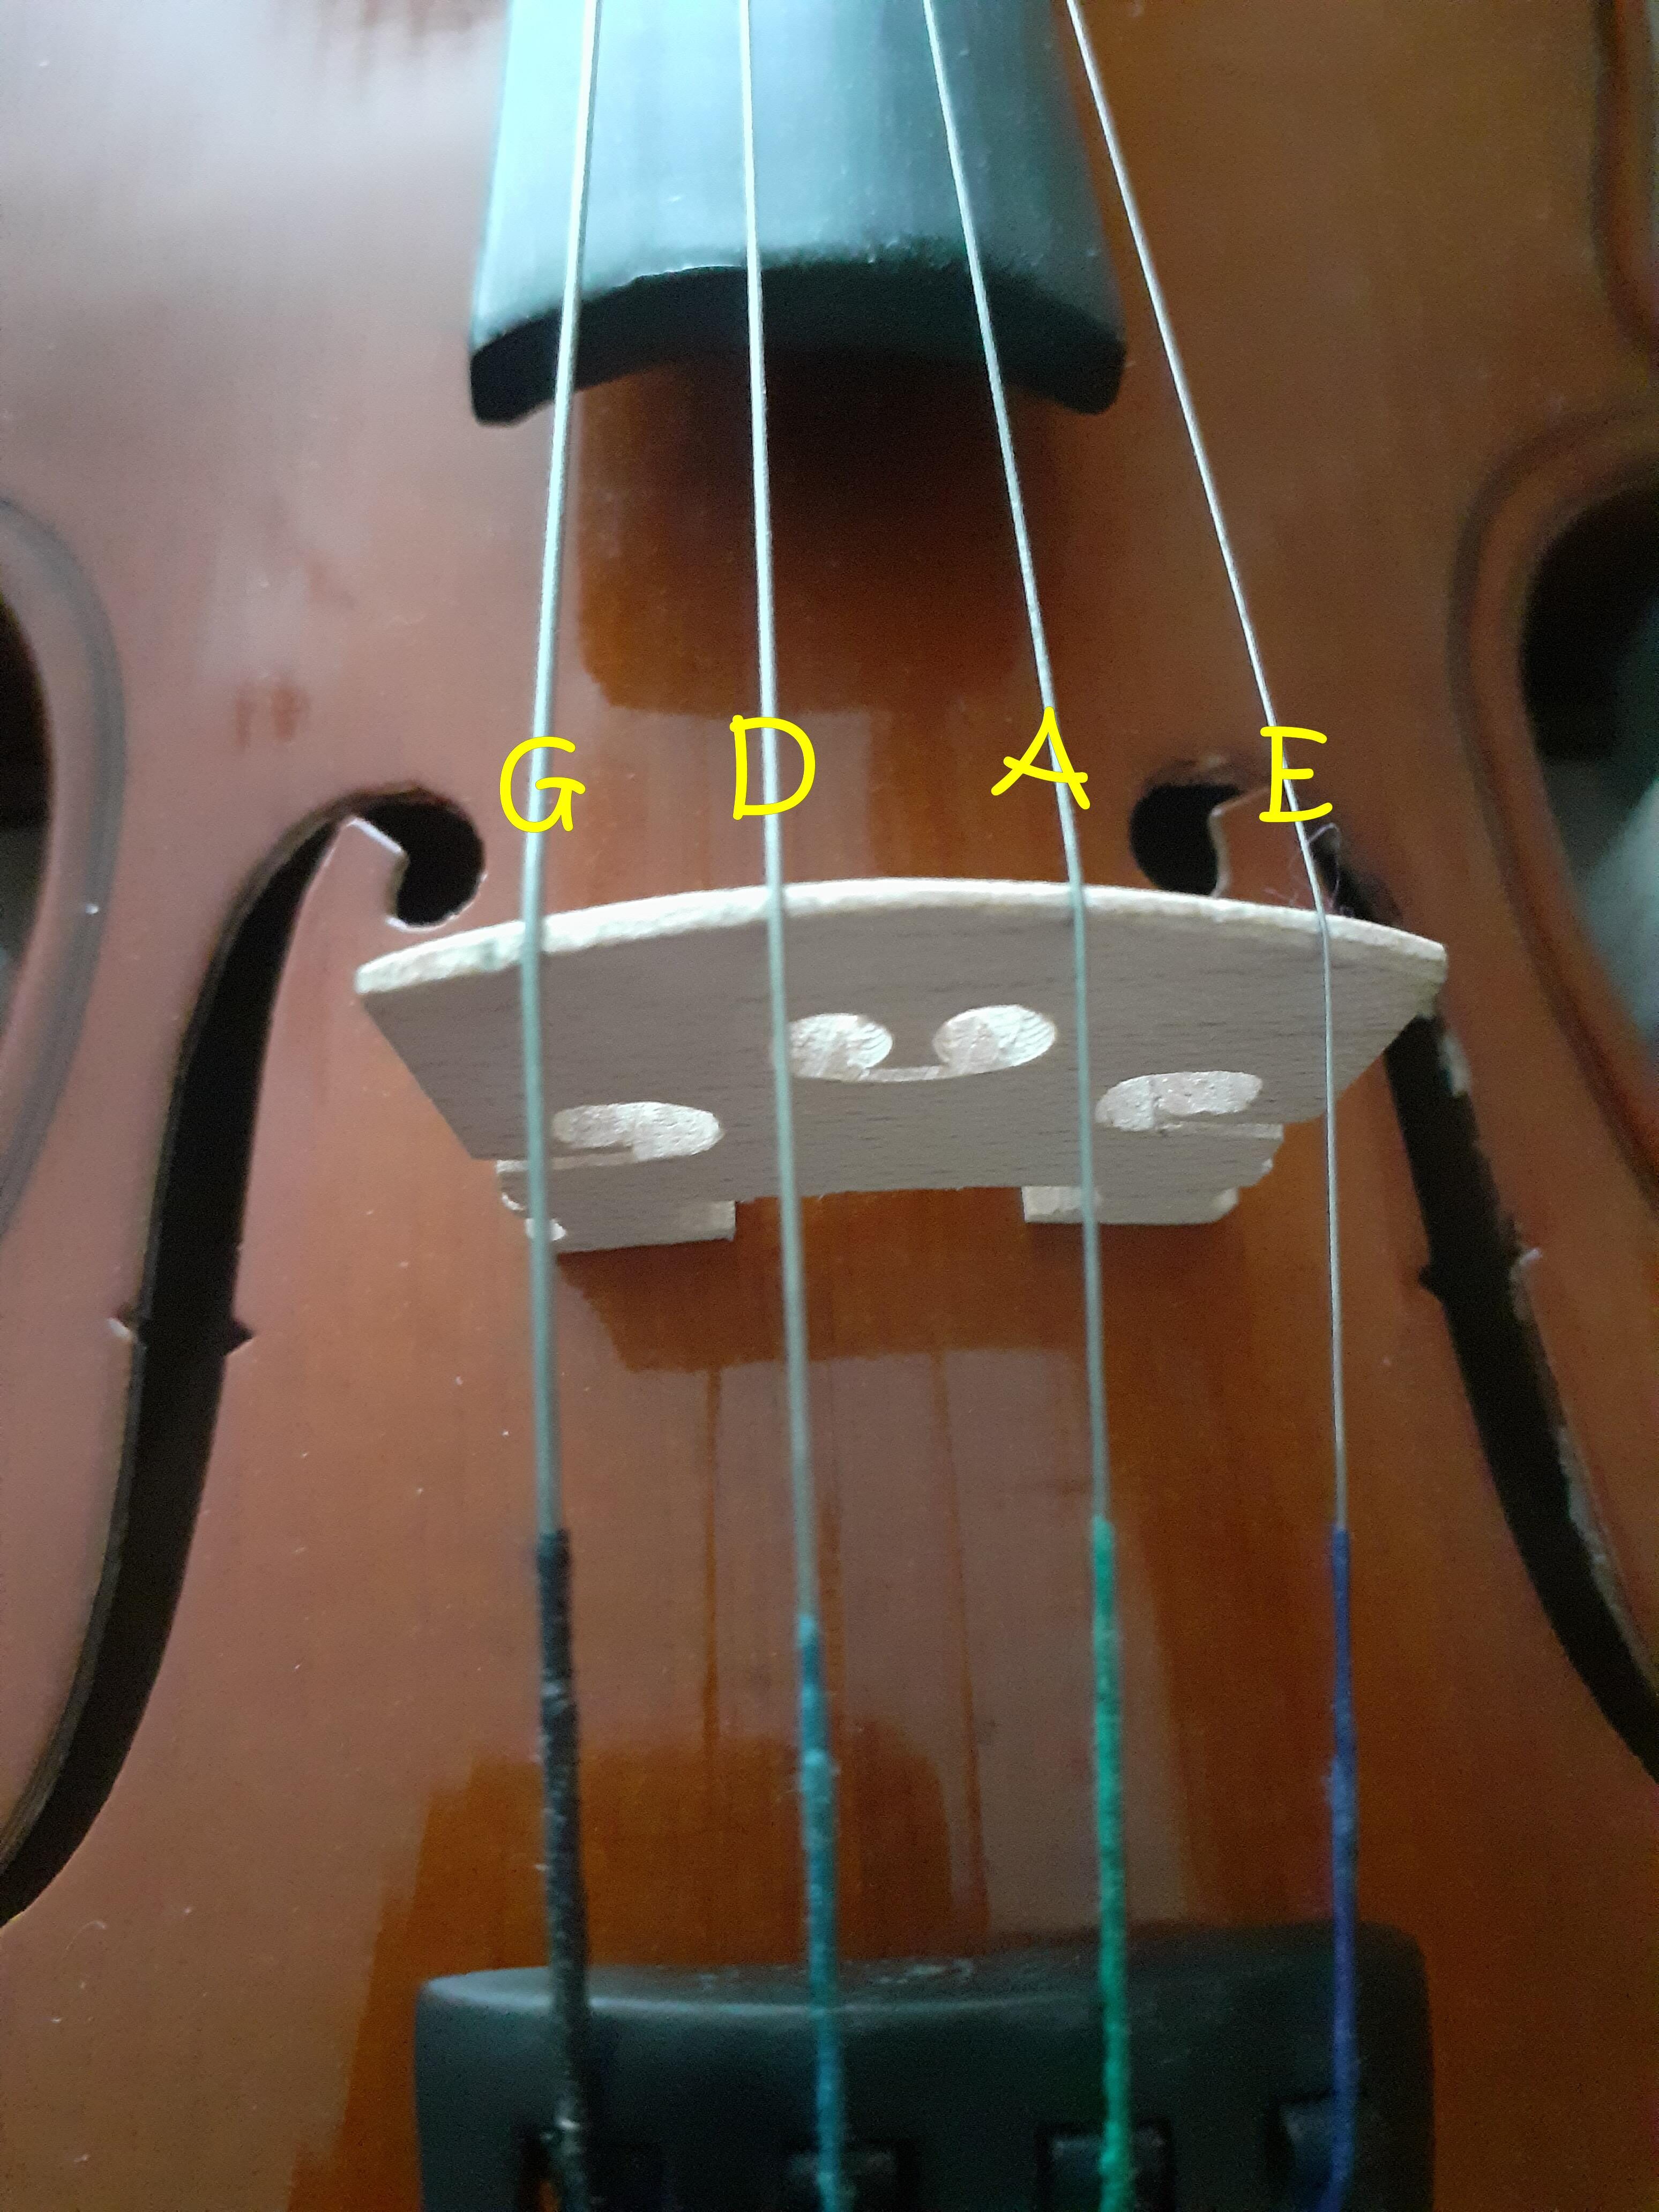 Violin string names